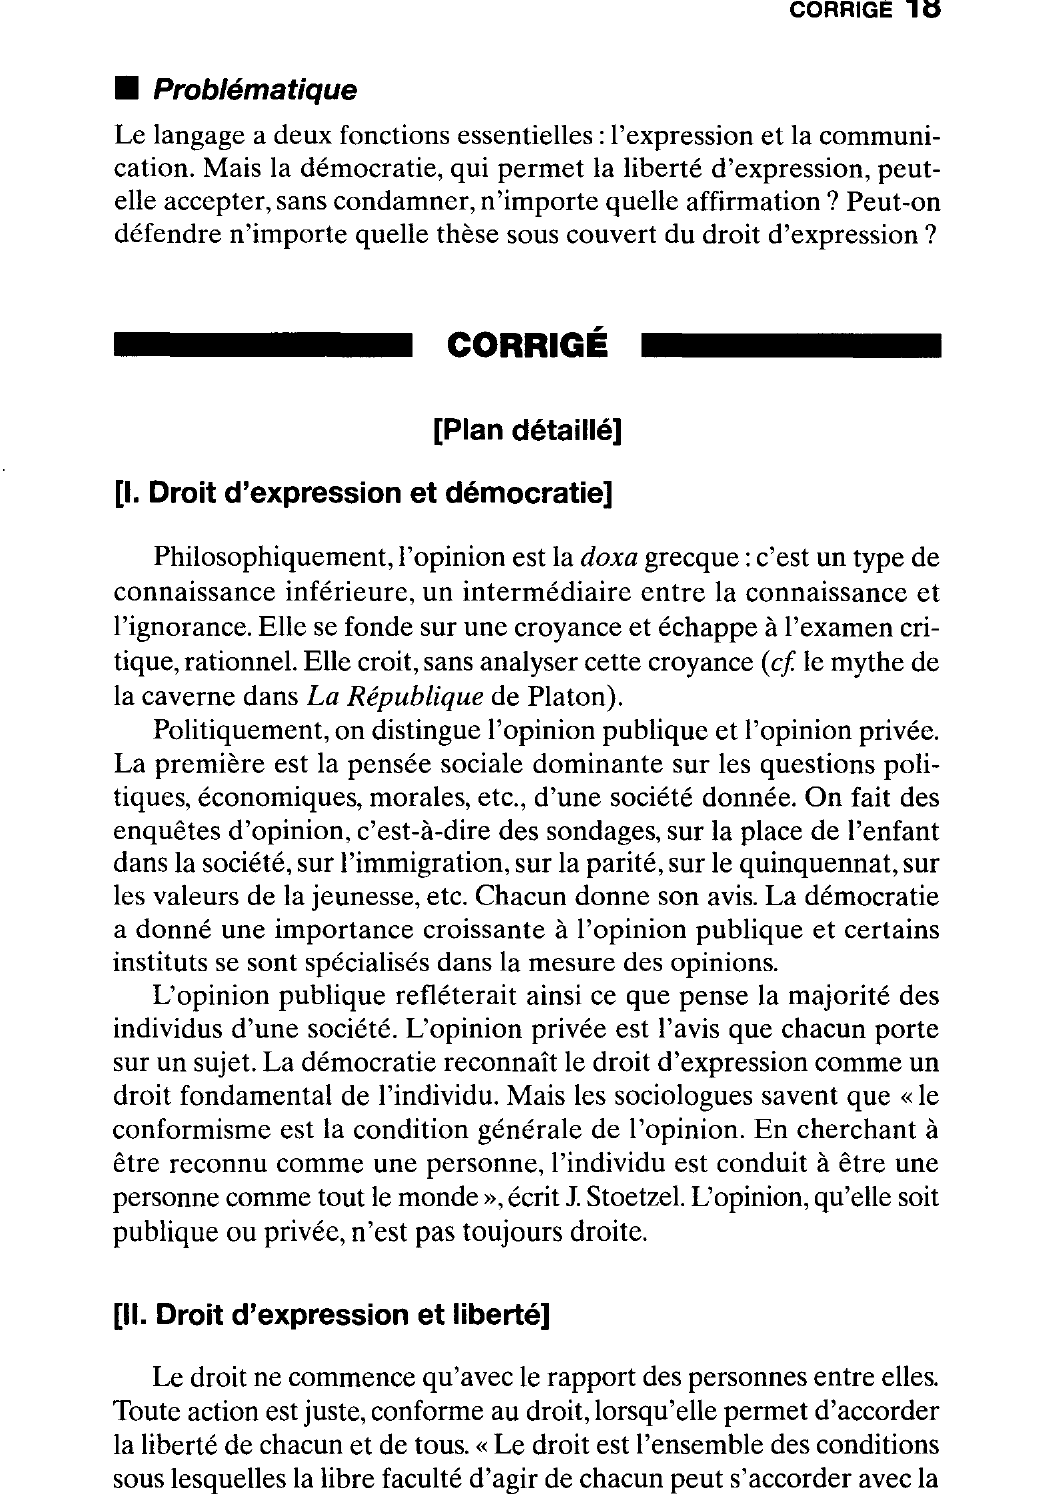 Prévisualisation du document Droit et Liberté d'expression ?